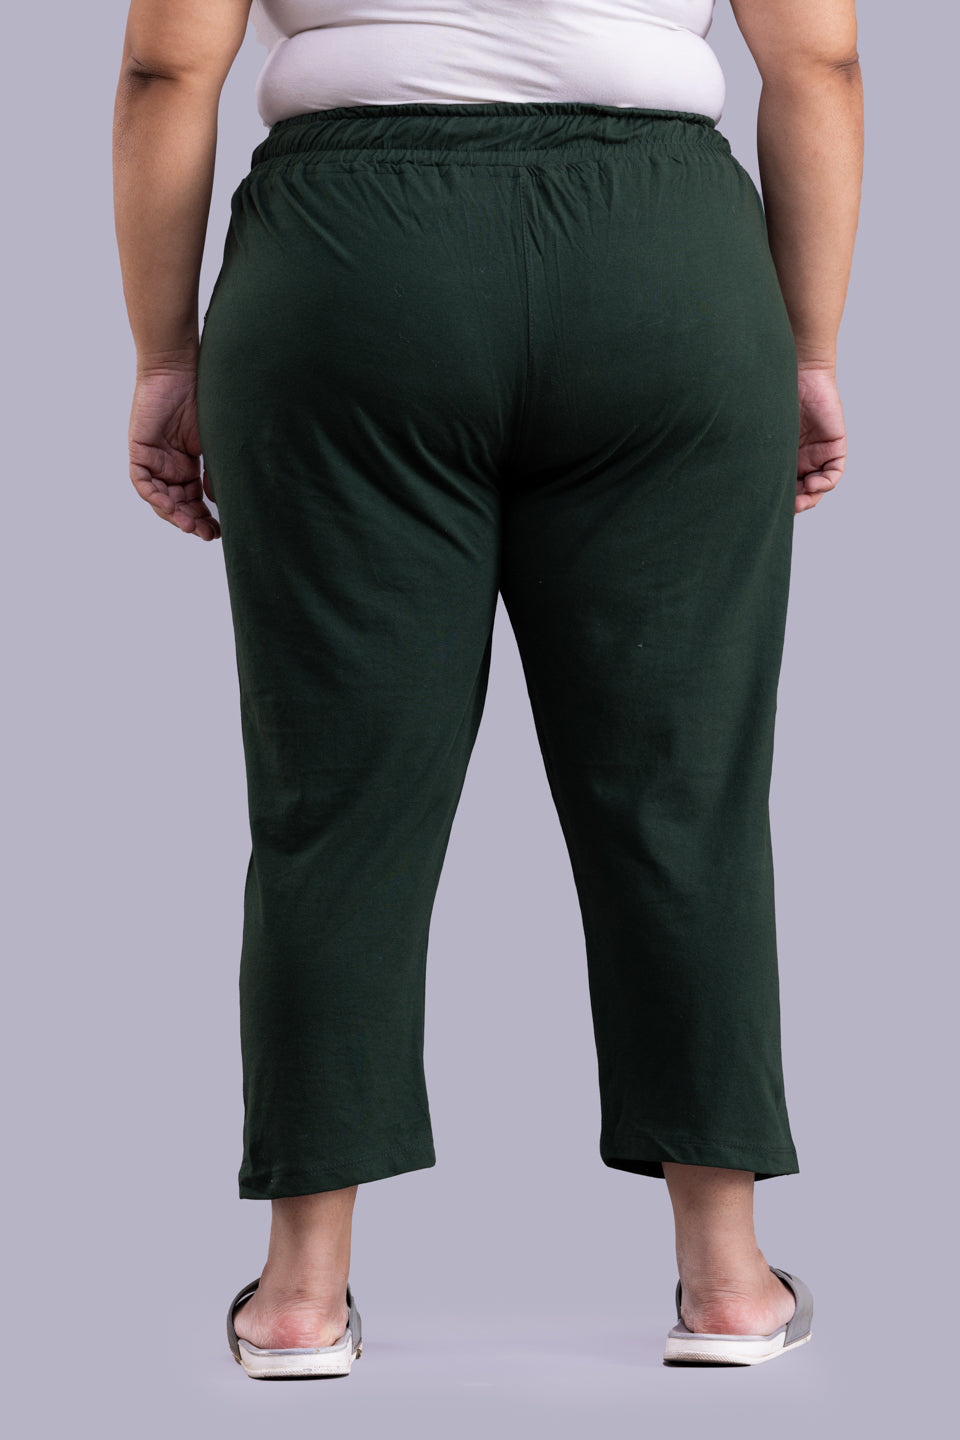 Cotton Capris For Women - Half Capri Pants - Bottle Green